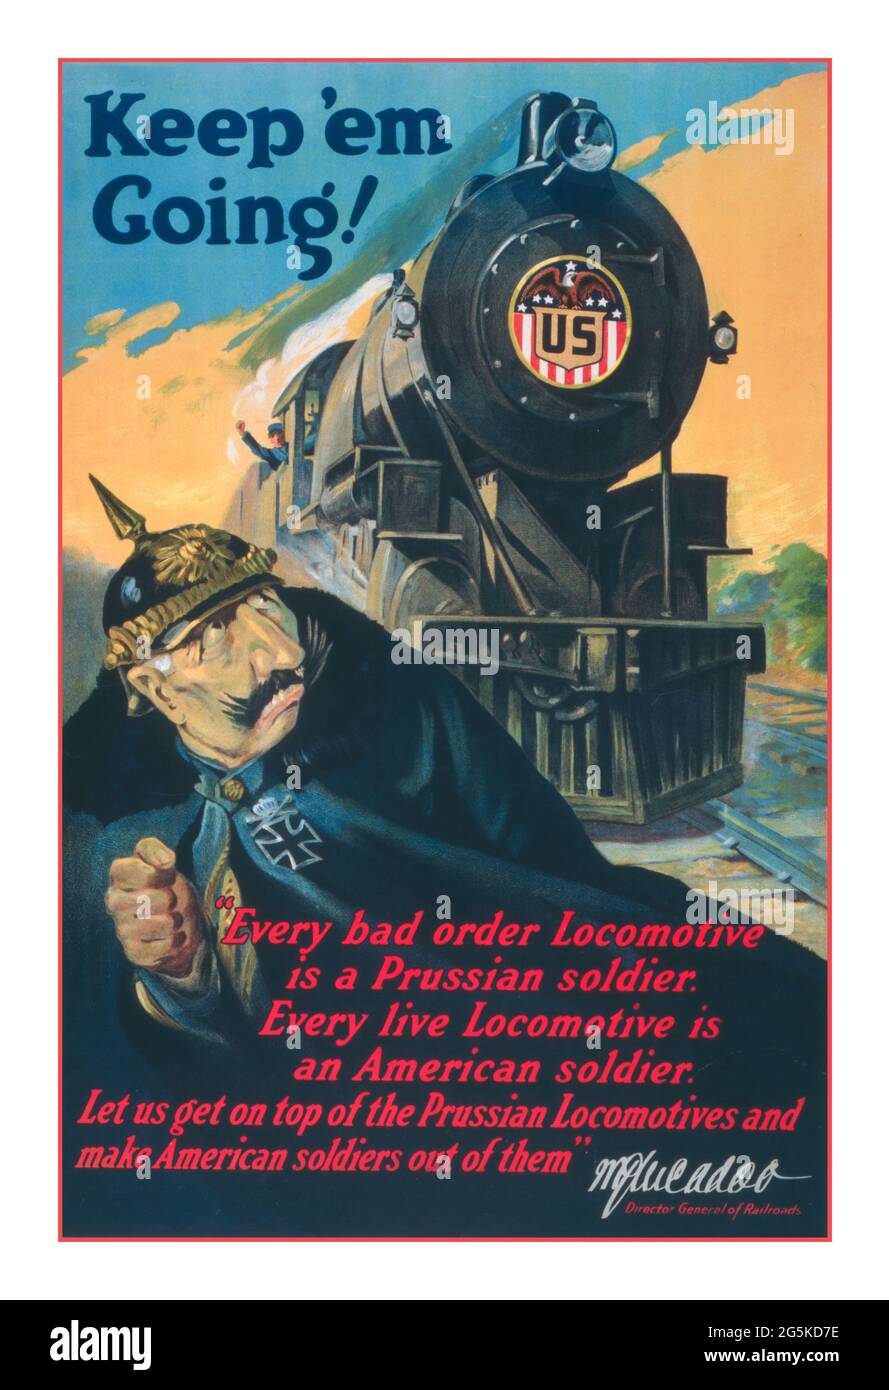 WW1 propagande USA Poster 'Keep 'em Going'! / Ketterlinus Phila. Affiche montrant un soldat allemand fuyant d'une locomotive arrivant en sens inverse, « U.S. » McAdoo, W. G. (William Gibbs), 1863-1941. [1917] Guerre mondiale, 1914-1918--aspects économiques et industriels--États-Unis - Guerre mondiale, 1914-1918--transport - locomotives de chemin de fer--1910-1920Lithographies--couleur--1910-1920. Affiches de guerre--américaines--1910-1920. « chaque locomotive de mauvais ordre est un soldat prussien. Chaque locomotive vivante est un soldat américain. Allons au-dessus des locomotives prussiennes et faisons des soldats américains hors d'eux Banque D'Images